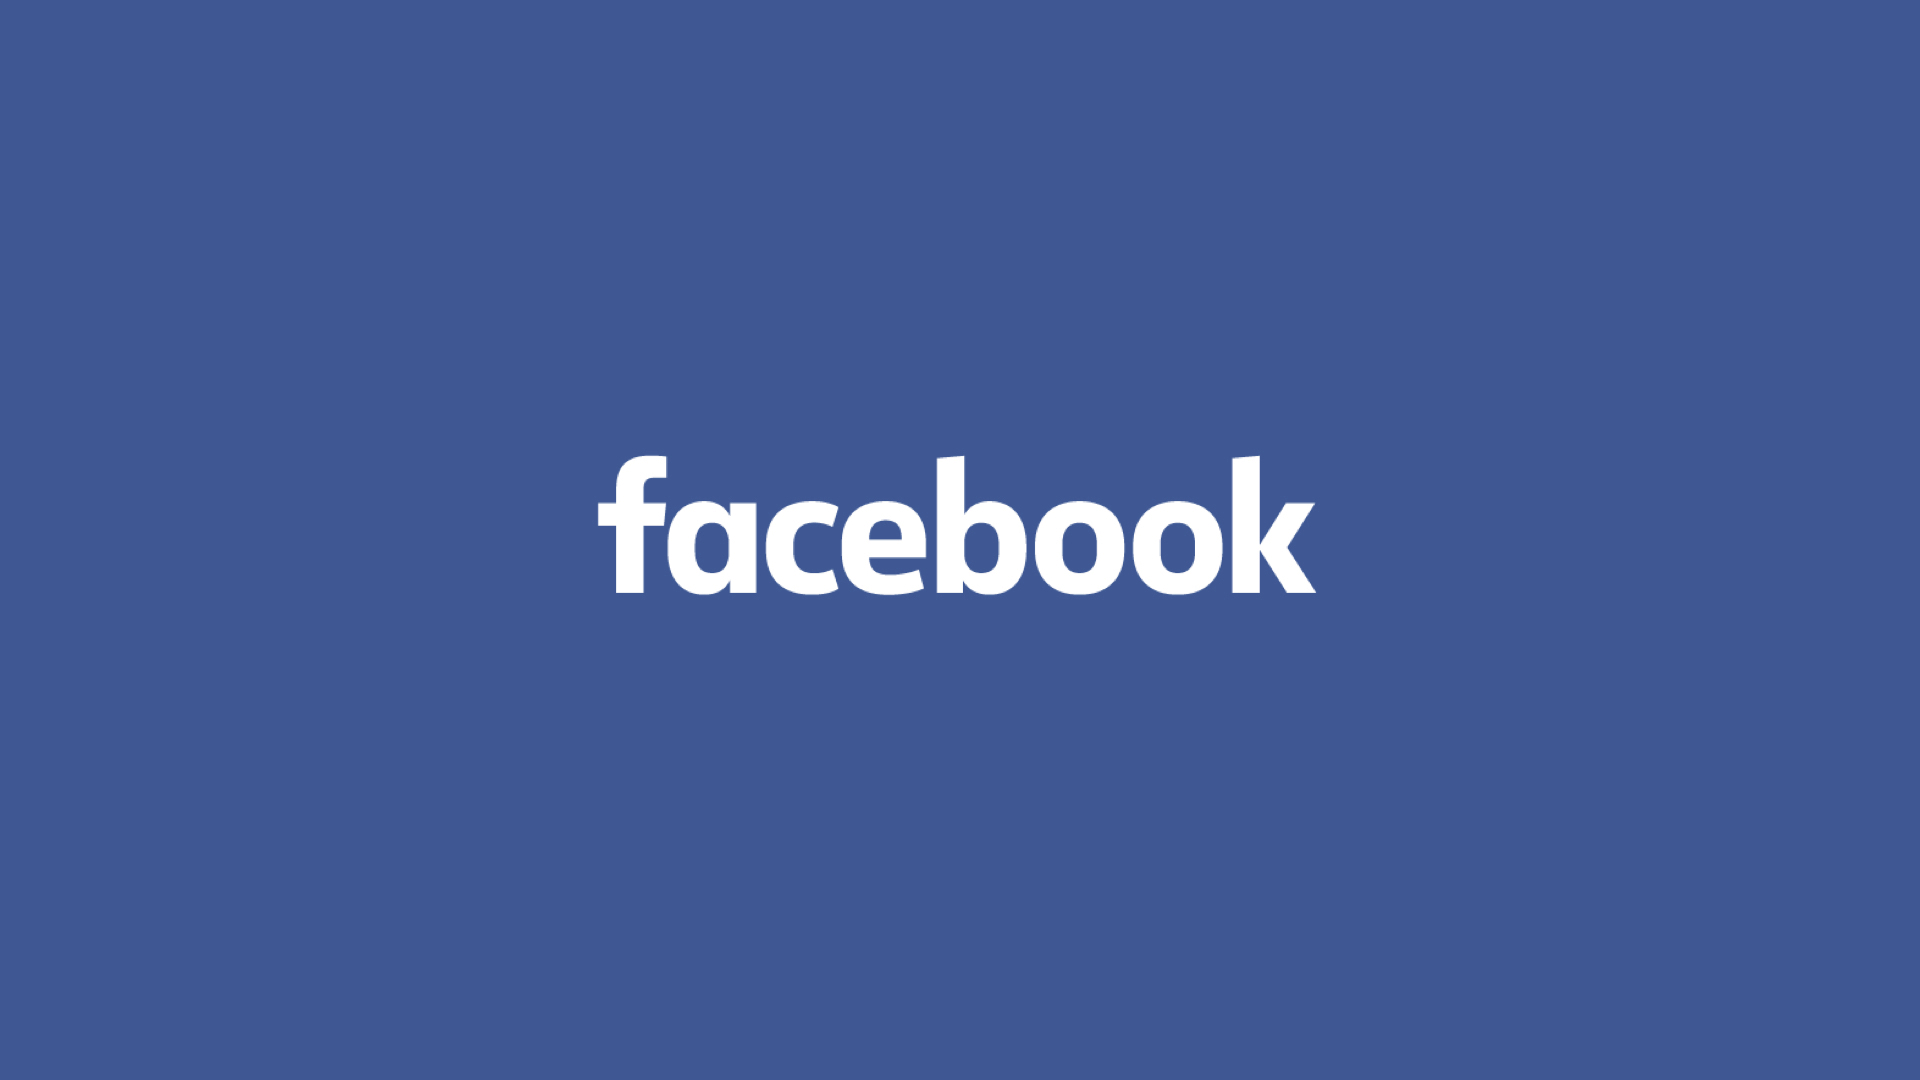 फेसबुकलाई टुक्र्याउने माग राख्दै अमेरिकामा मुद्दा दायर